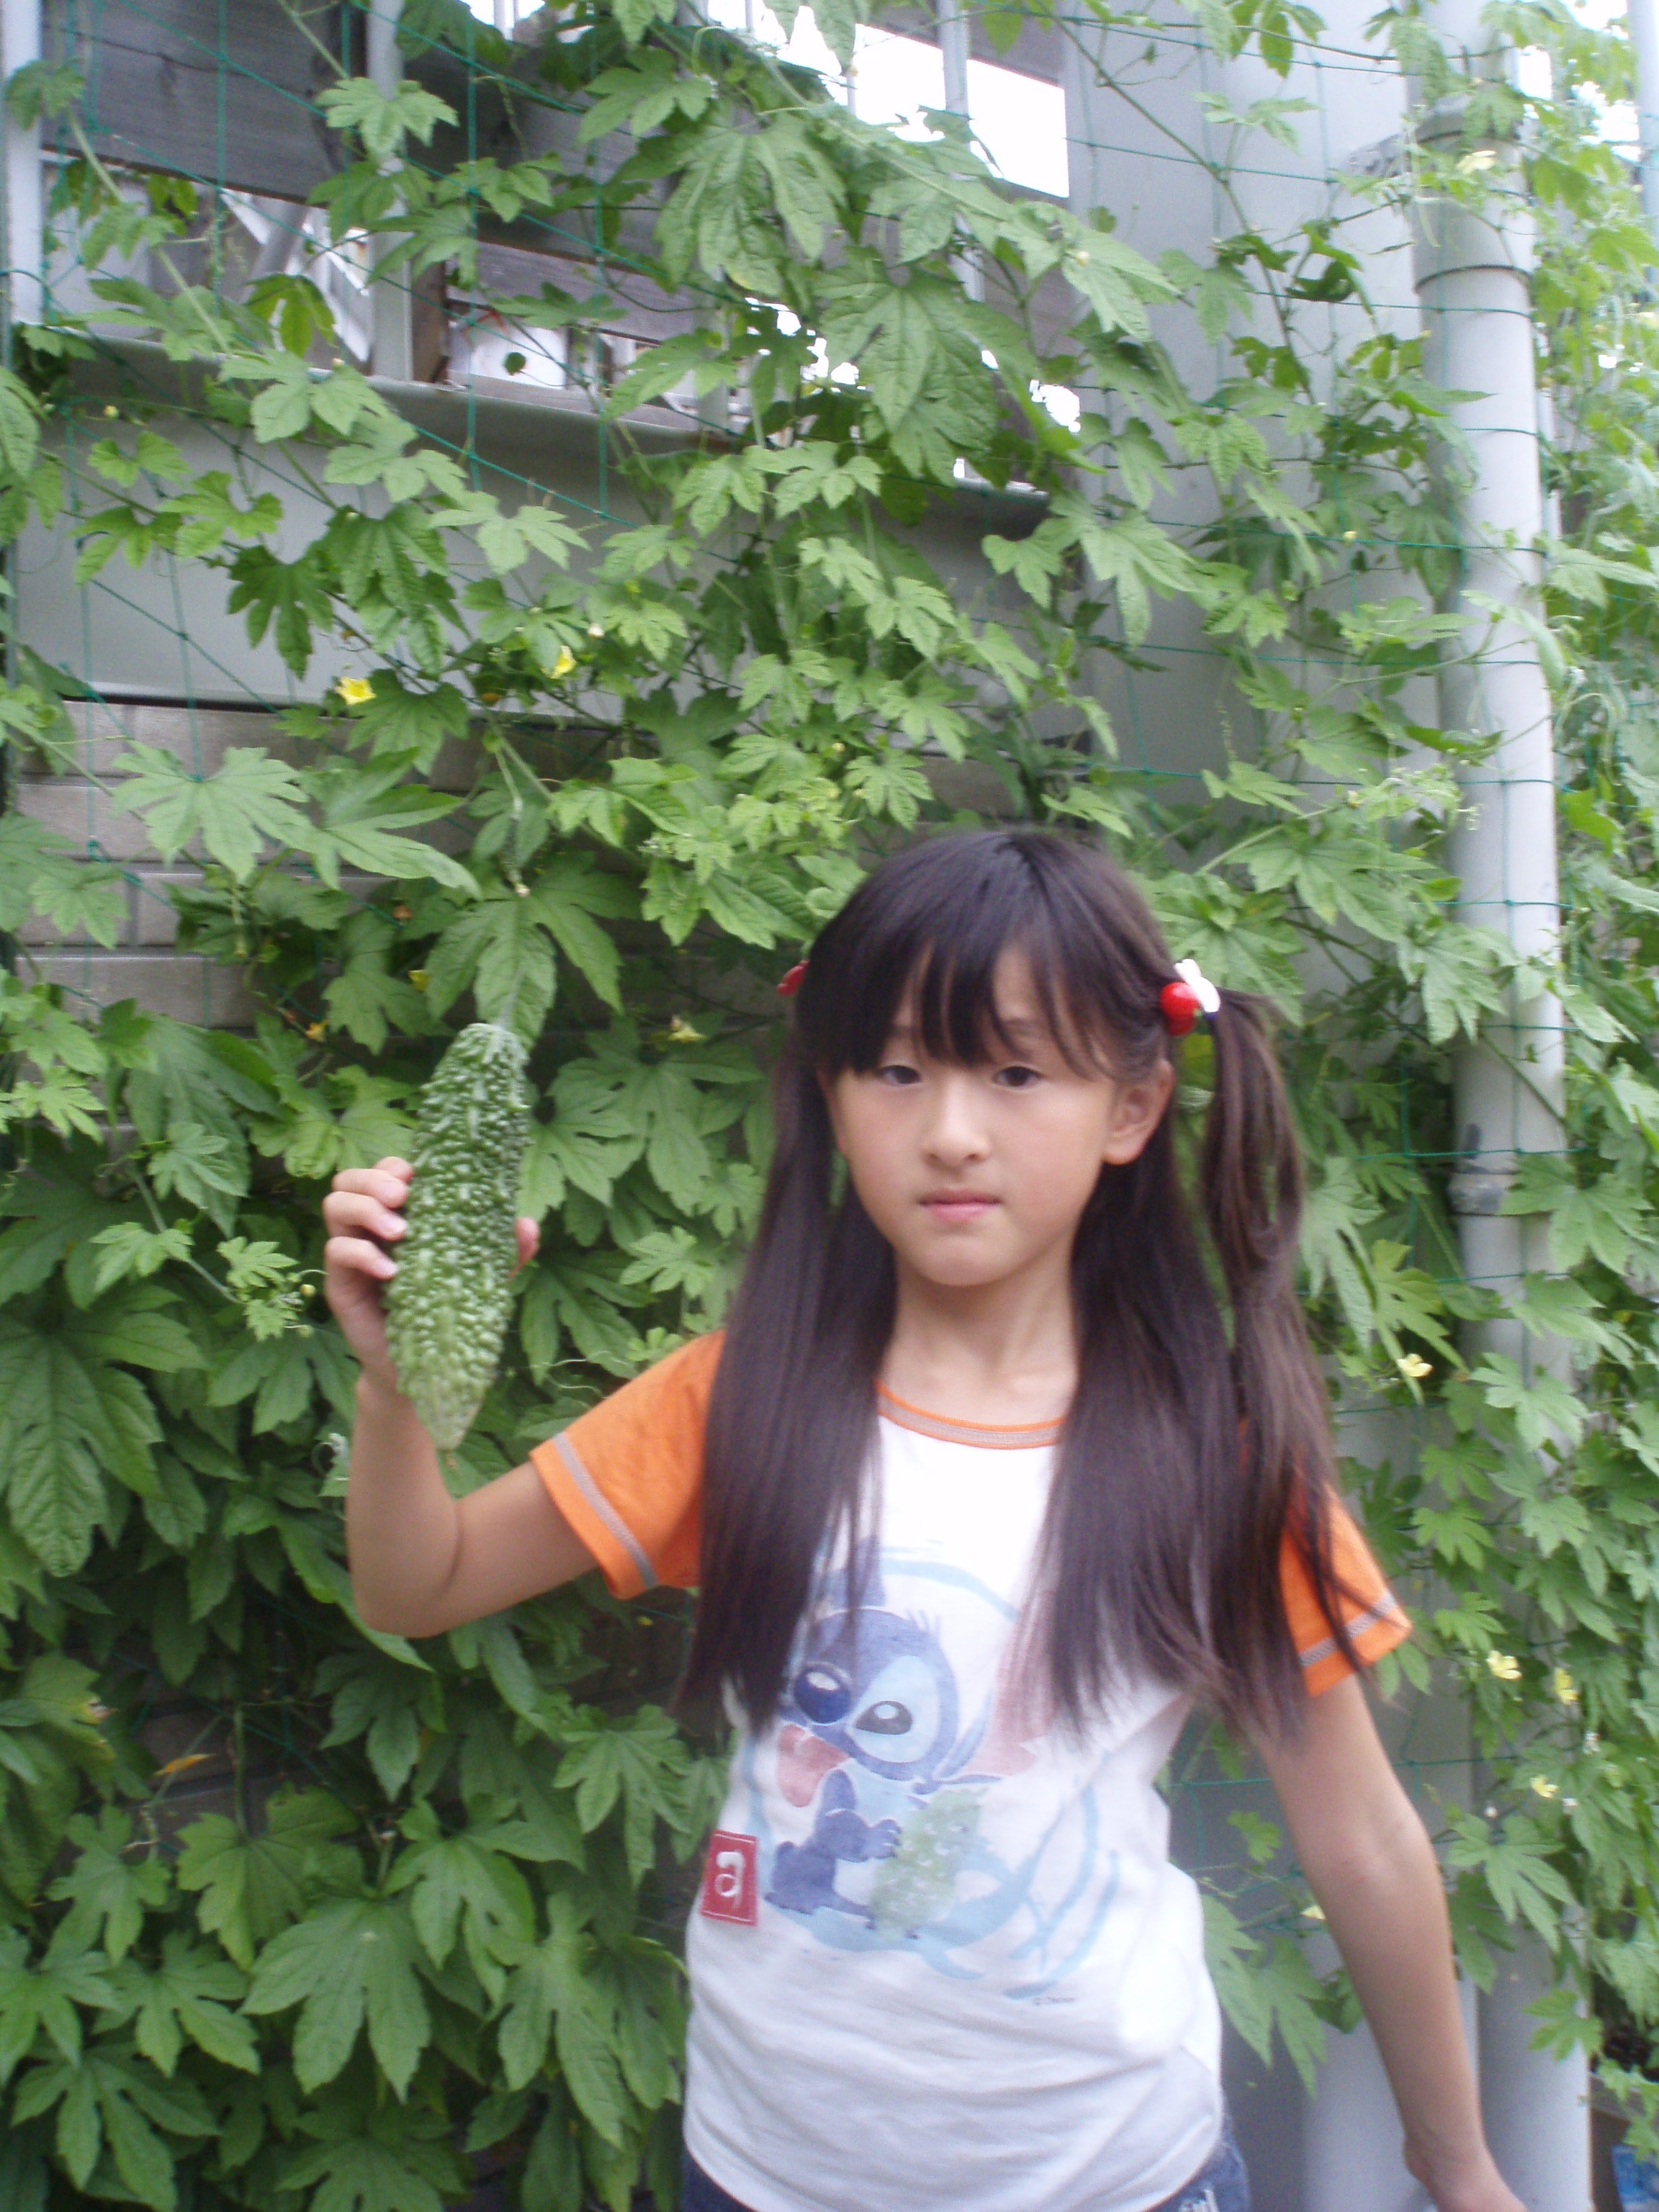 9歳娘画像 姉agehaモデル・寿リリカ、9歳娘は小学生ギャルモデル 2S公開に ...